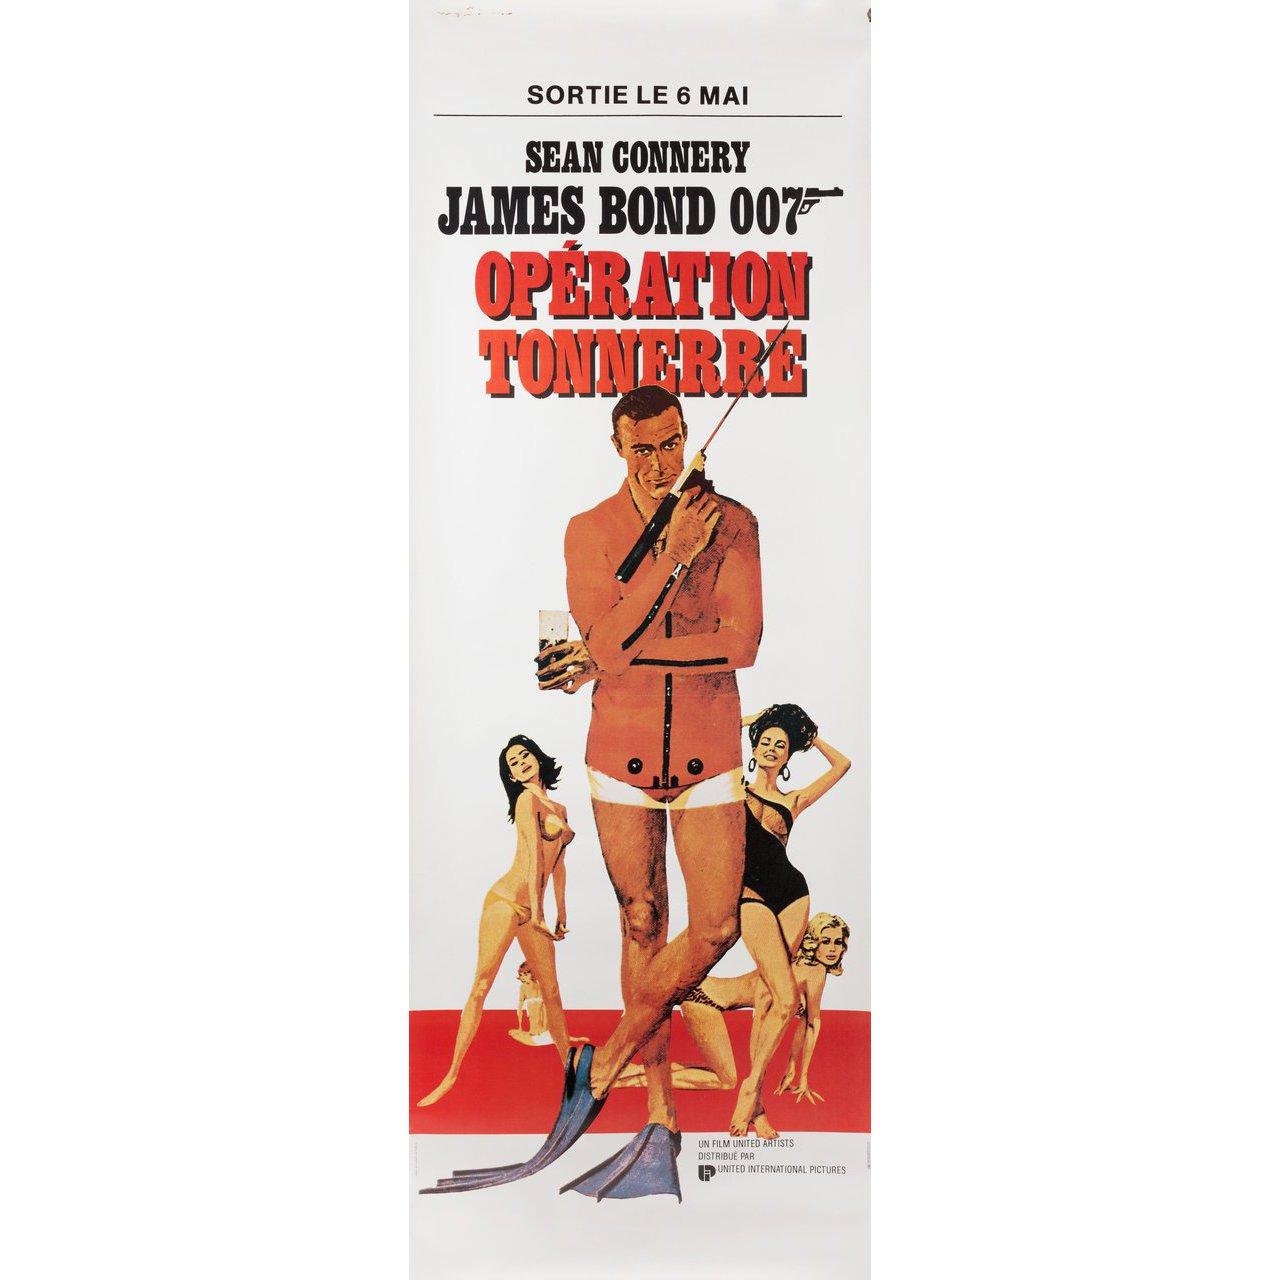 Originales französisches Pantalonplakat aus den 1980er Jahren für den Film Thunderball von 1965 unter der Regie von Terence Young mit Sean Connery / Claudine Auger / Adolfo Celi / Luciana Paluzzi. Guter Zustand, gerollt. Bitte beachten Sie: Die